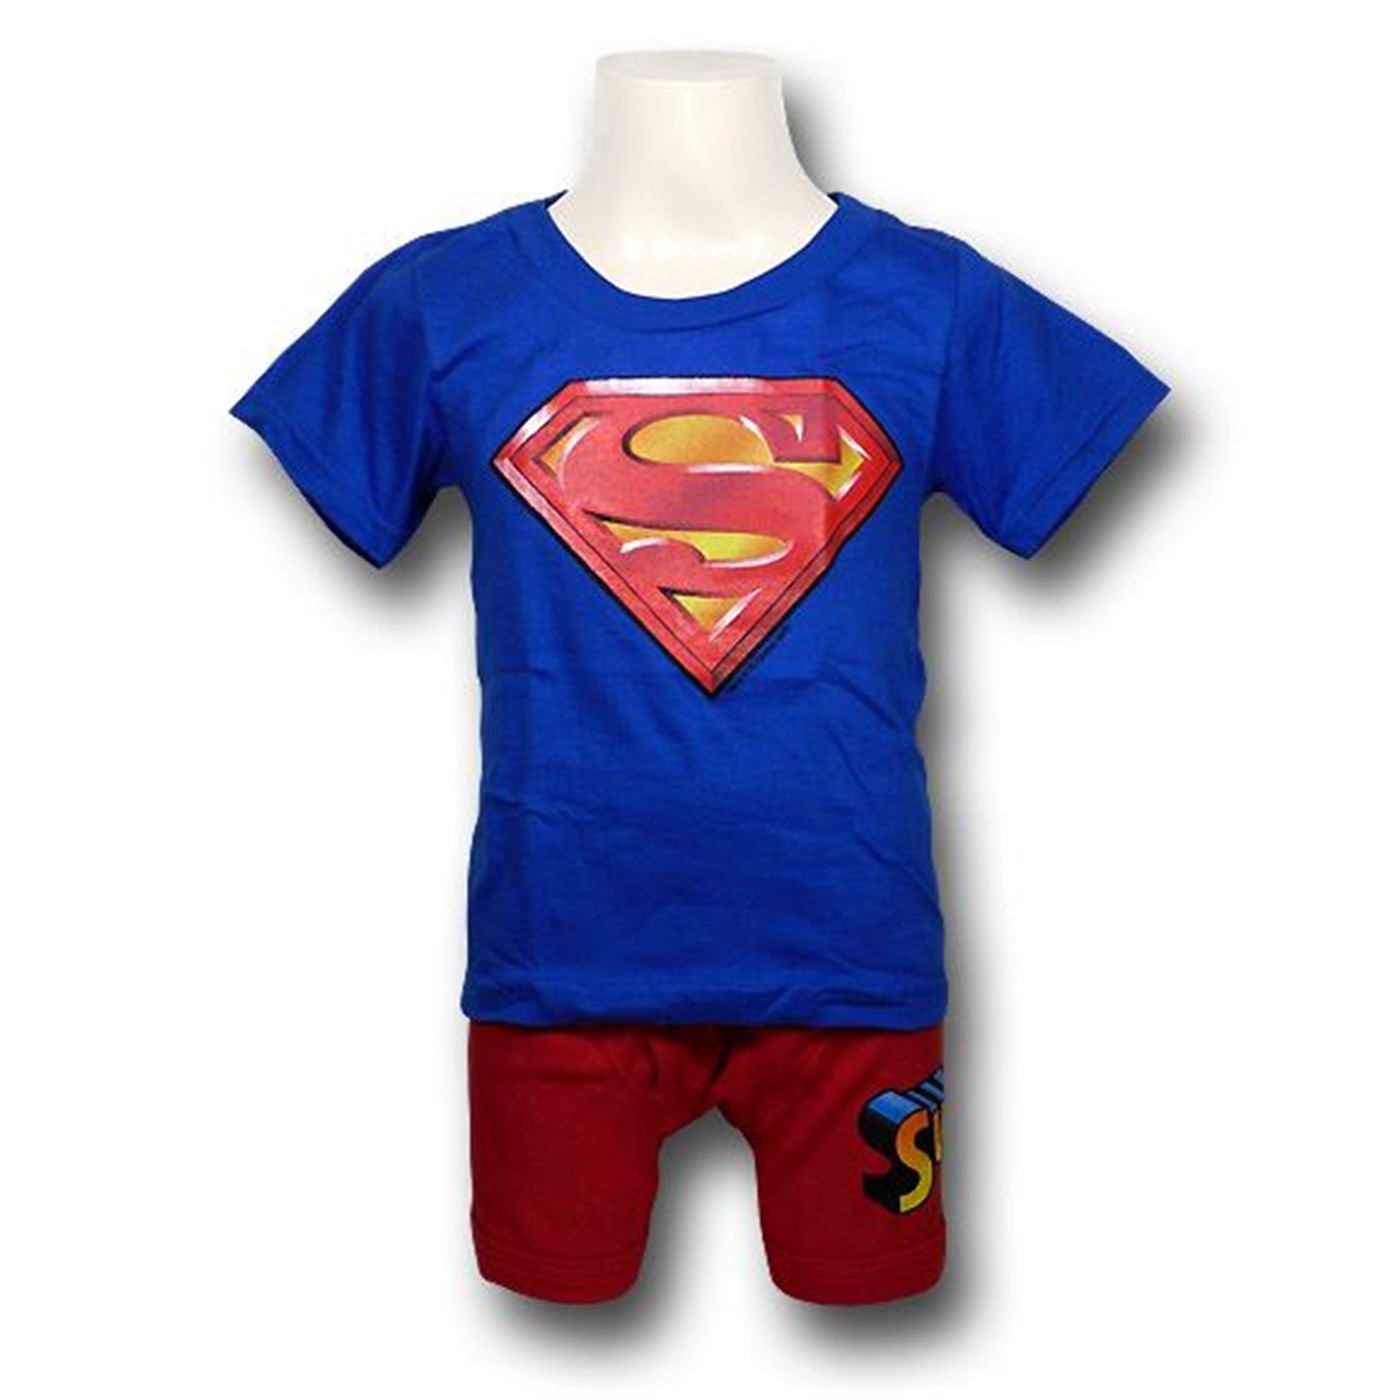 Superman Juvenile Underoos Set